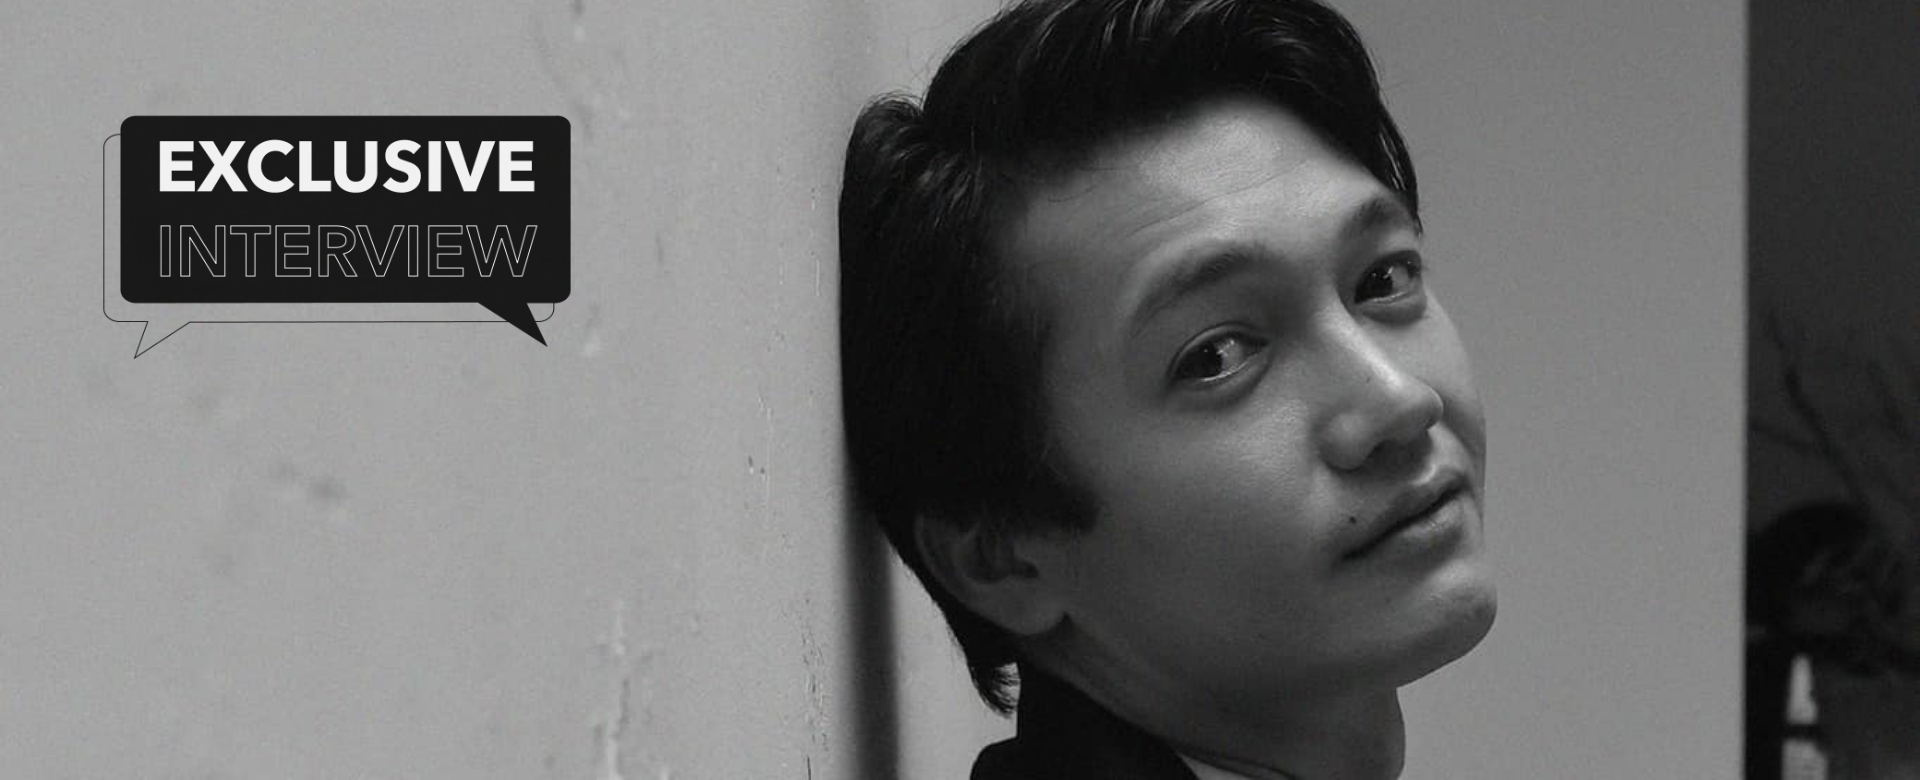 Quang Tuấn: “Từ lúc bắt đầu, tôi xác định muốn trở thành diễn viên thực lực”